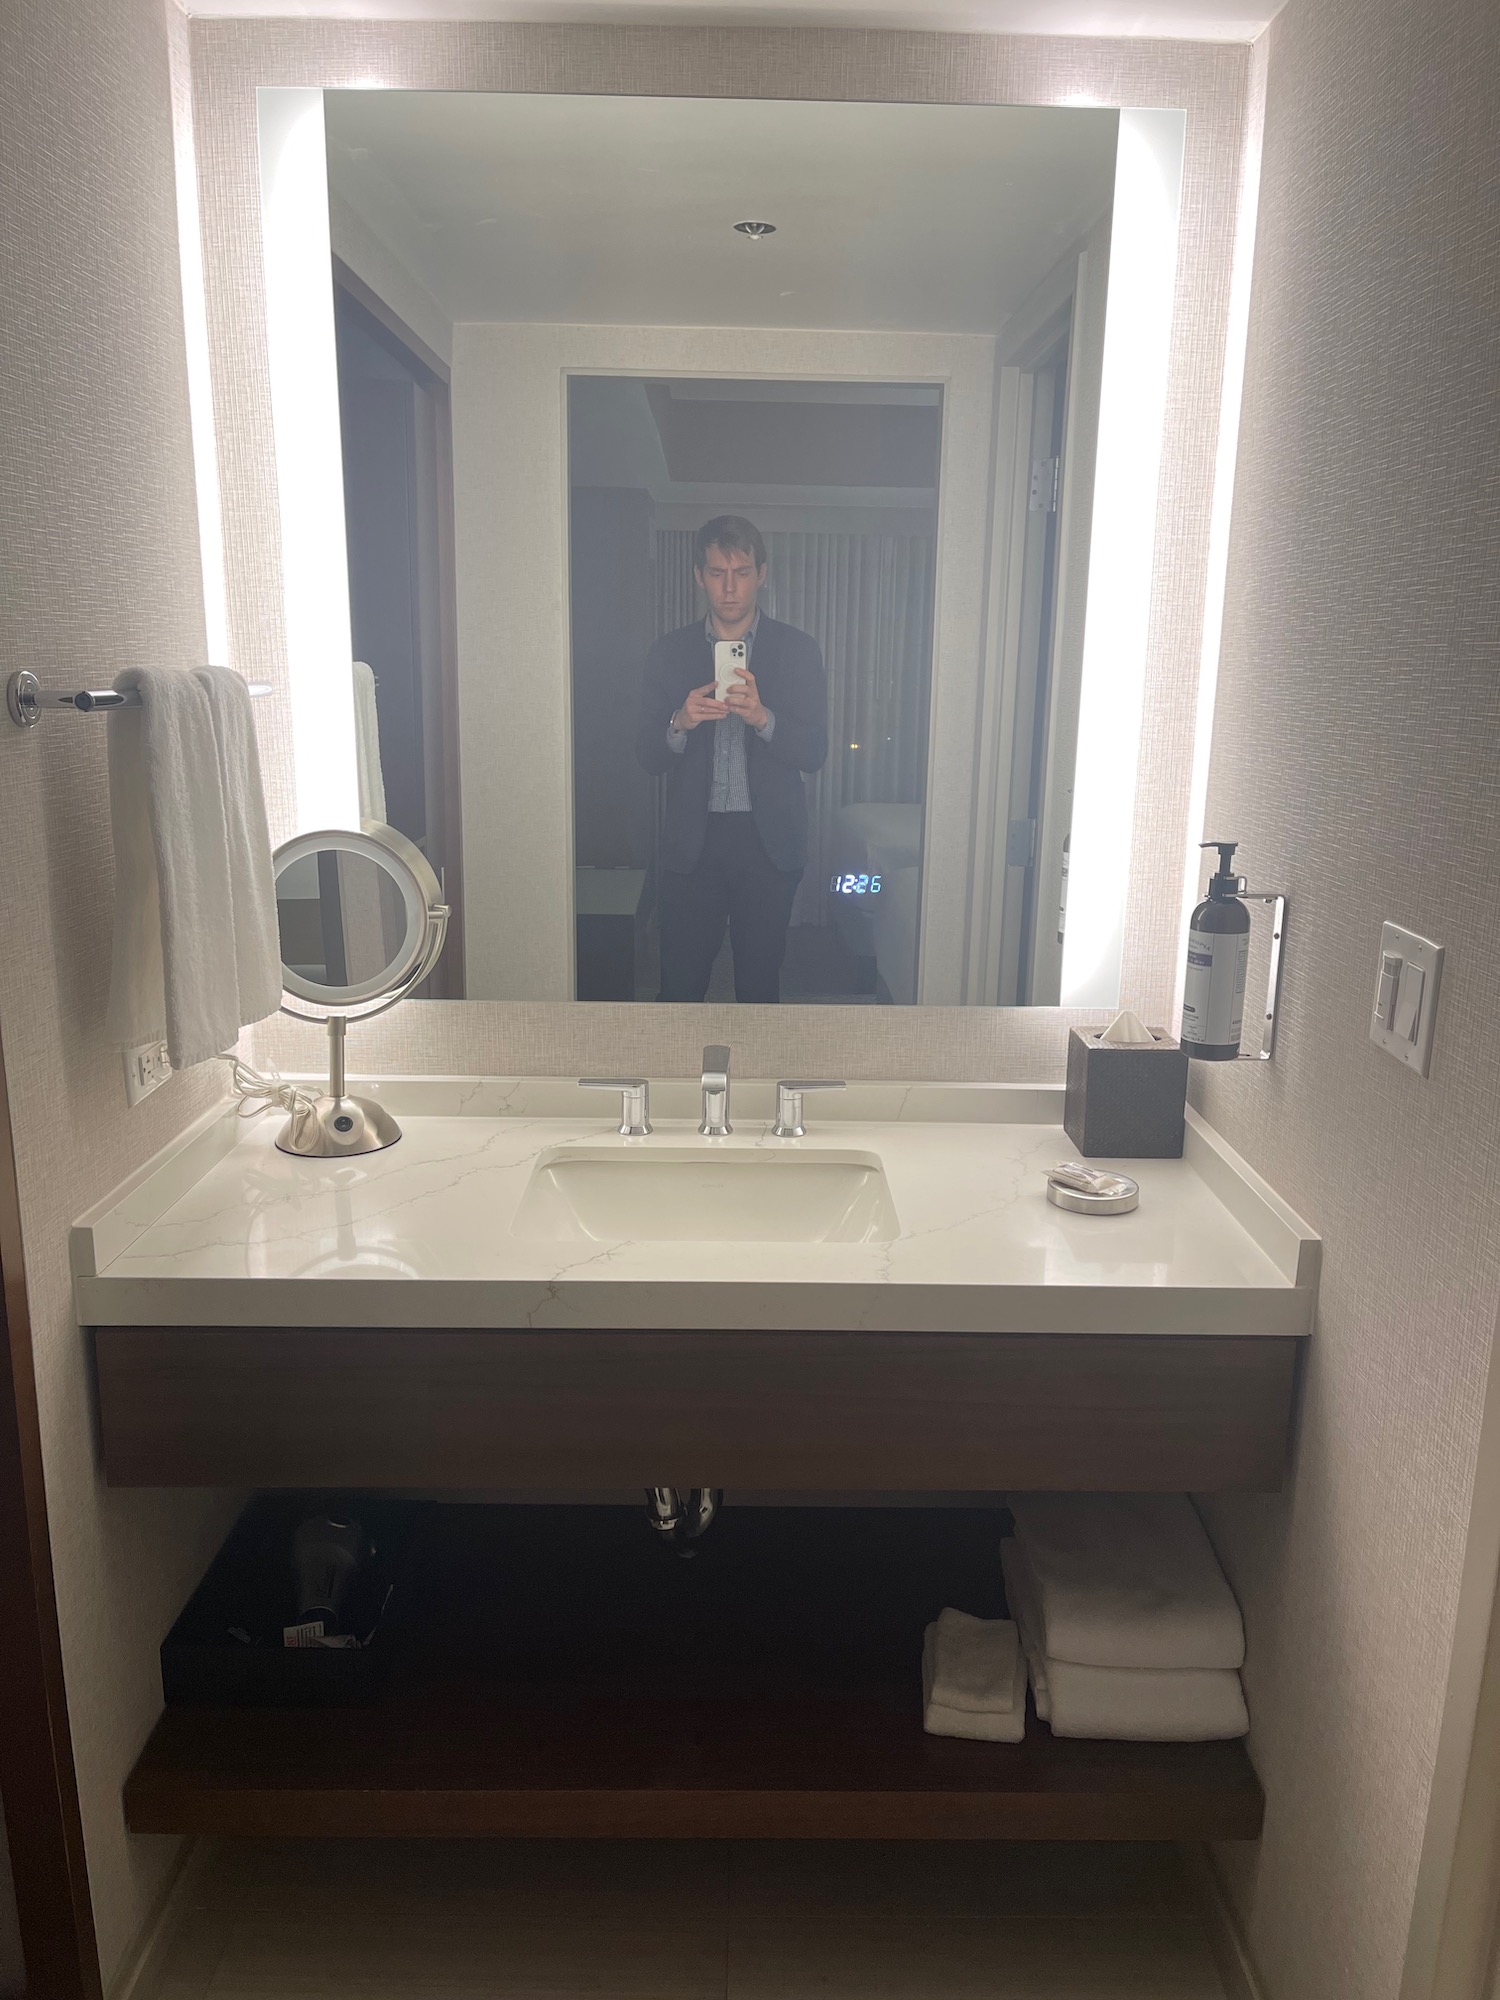 a man taking a selfie in a bathroom mirror